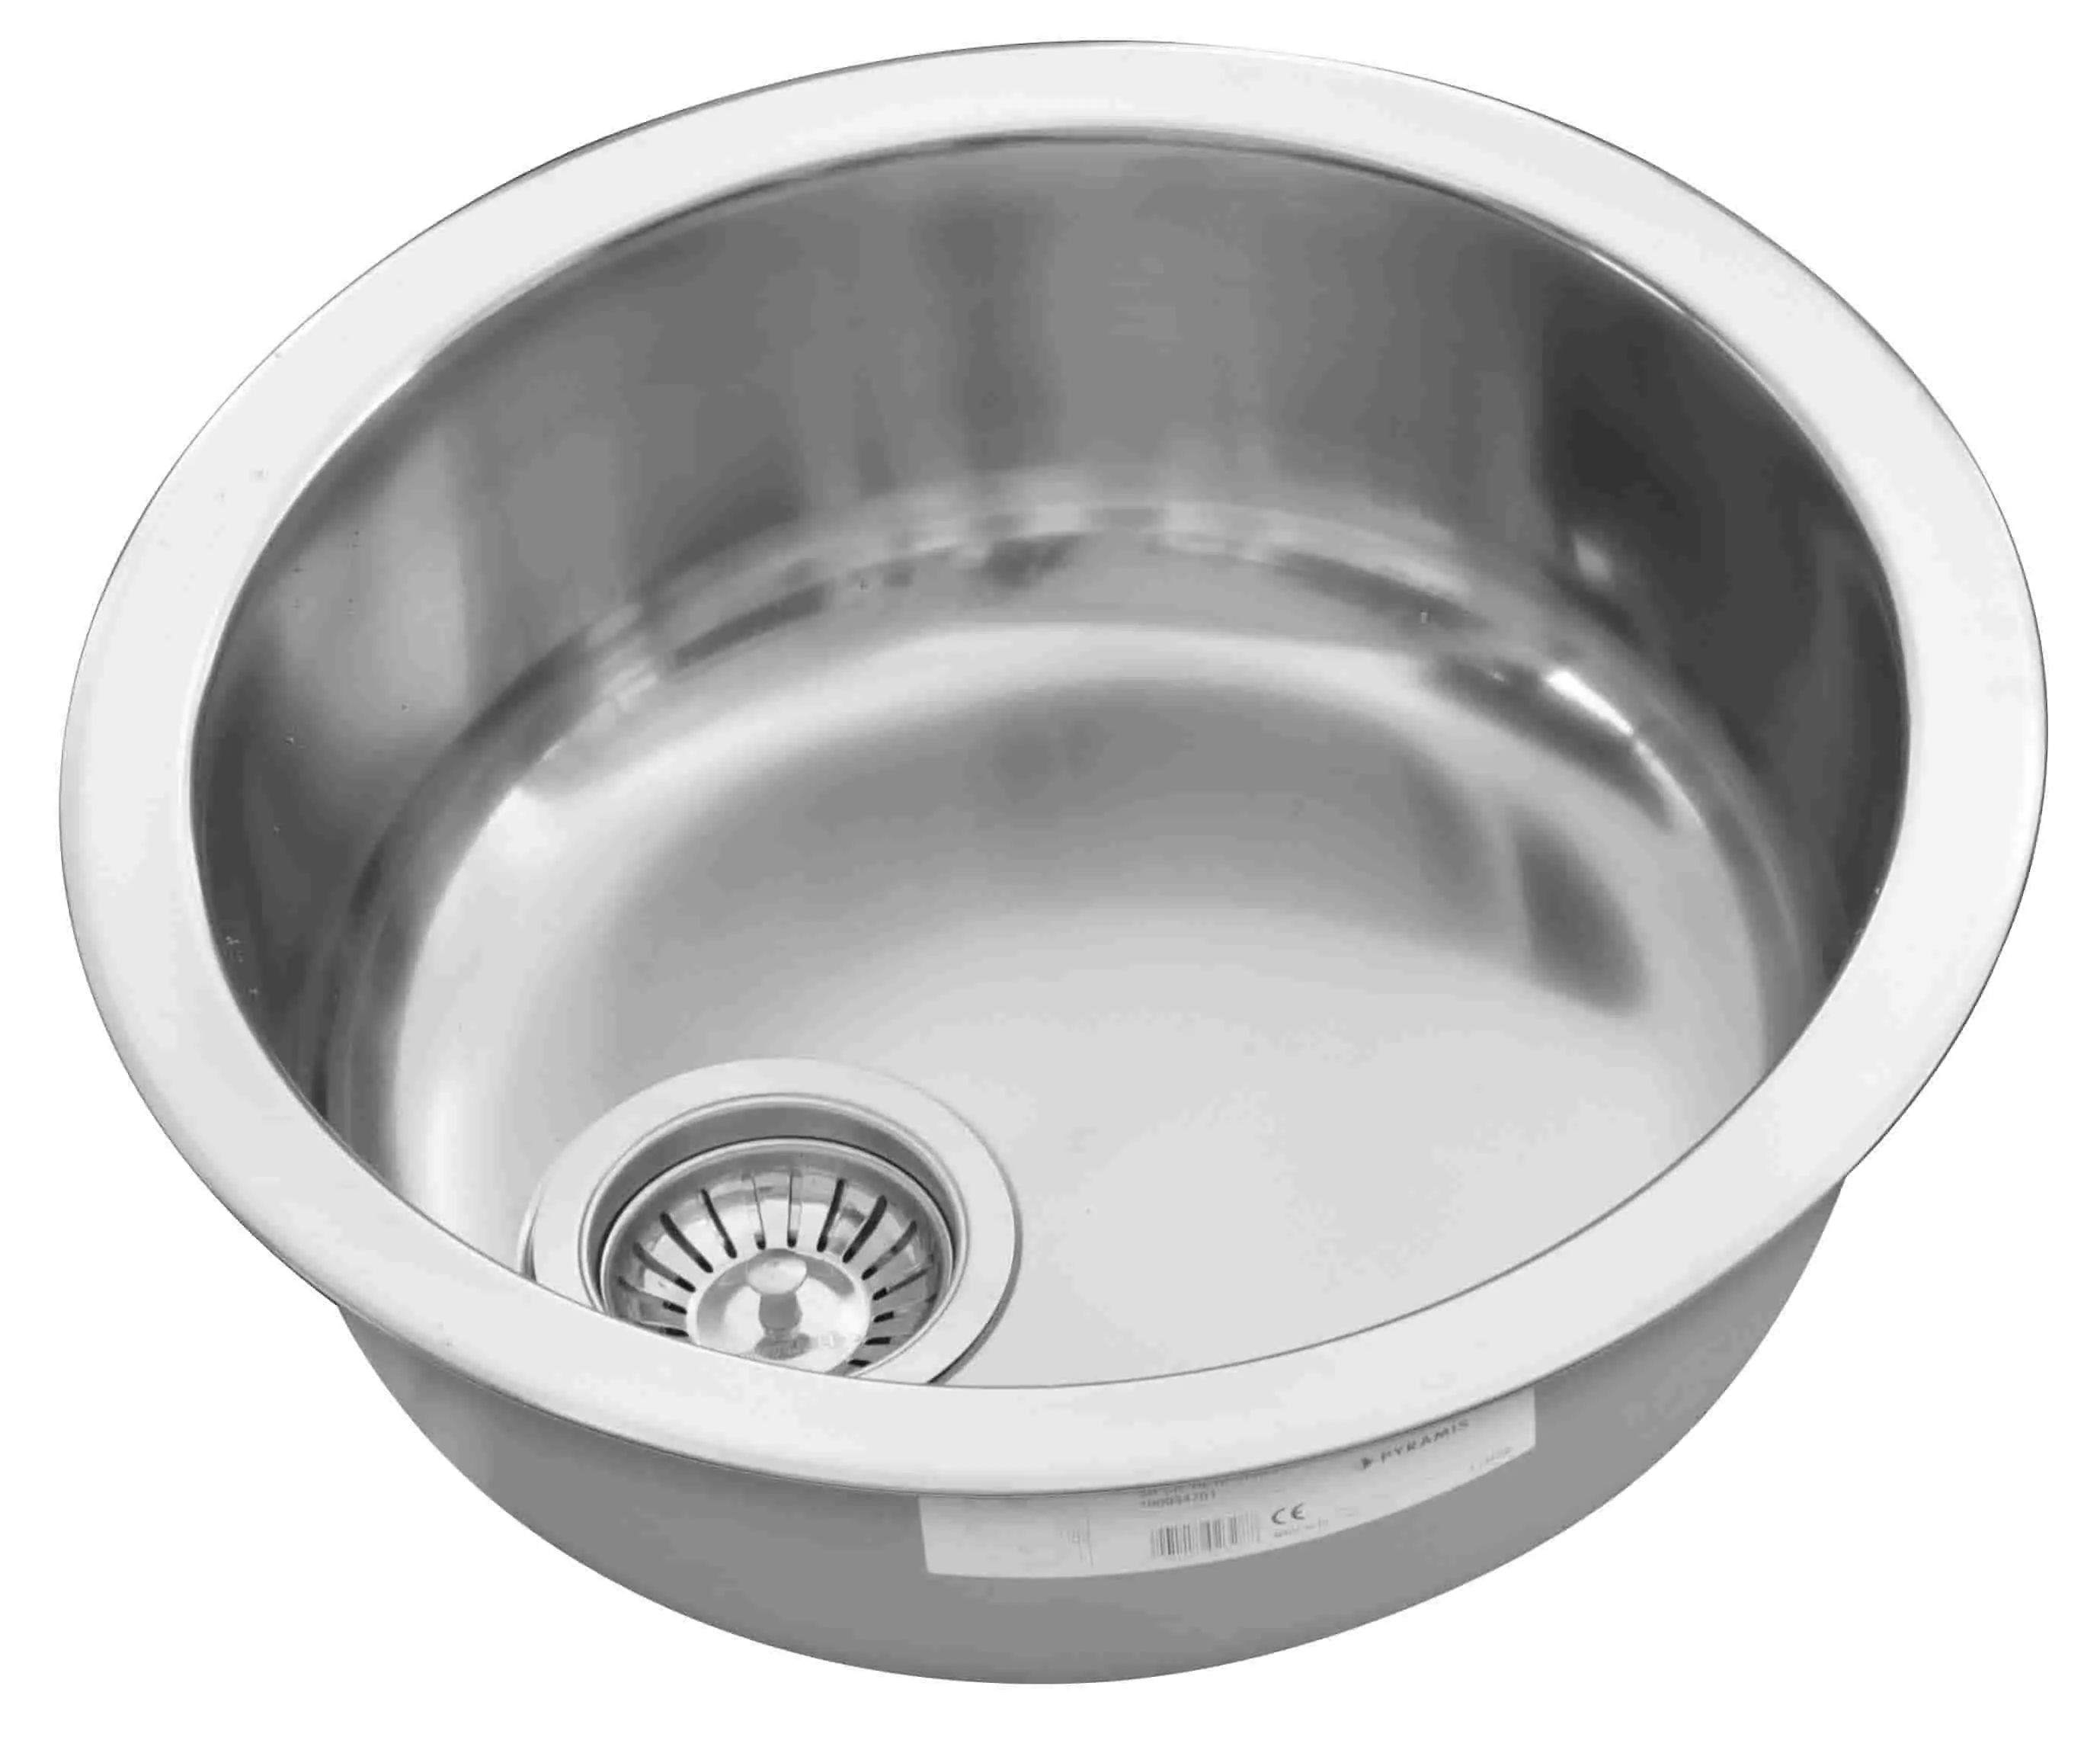 Pyramis round bowl sink